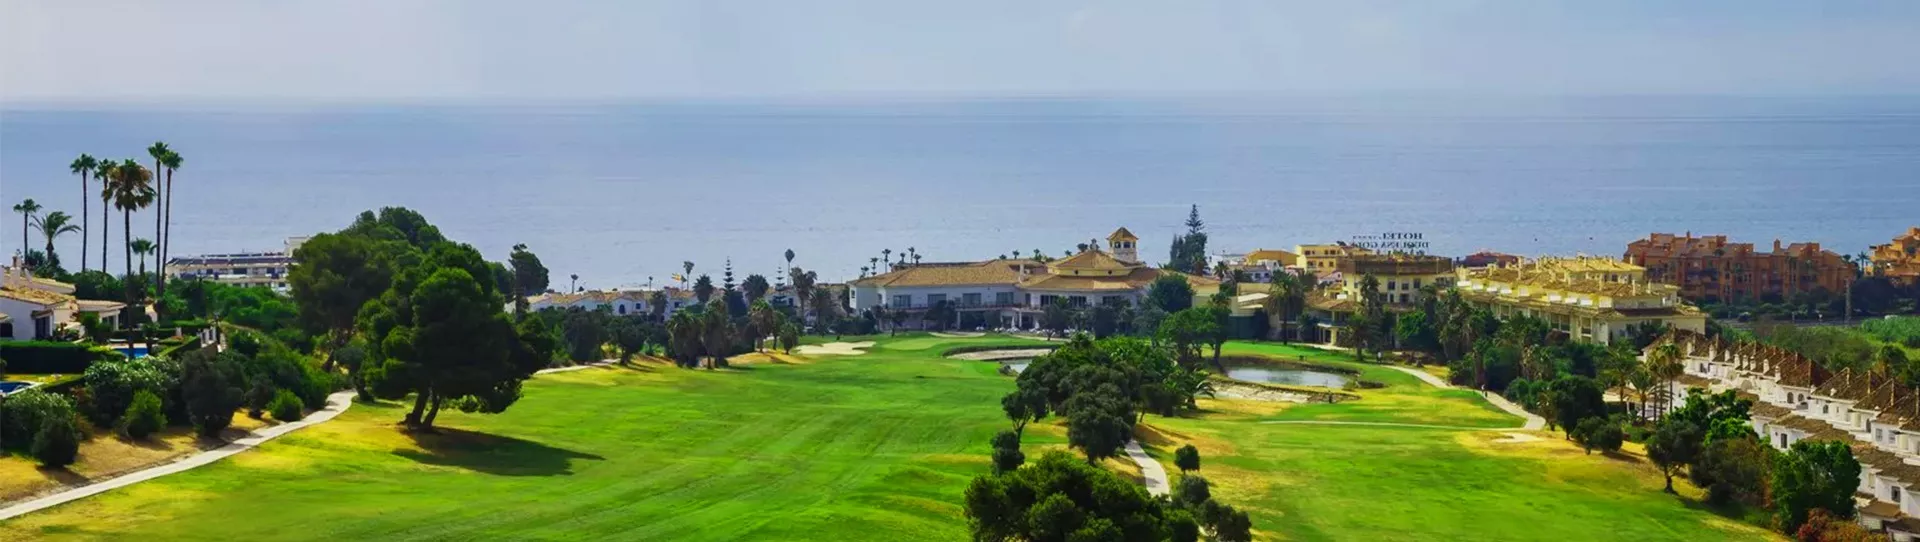 Spain golf courses - La Duquesa Golf - Photo 3